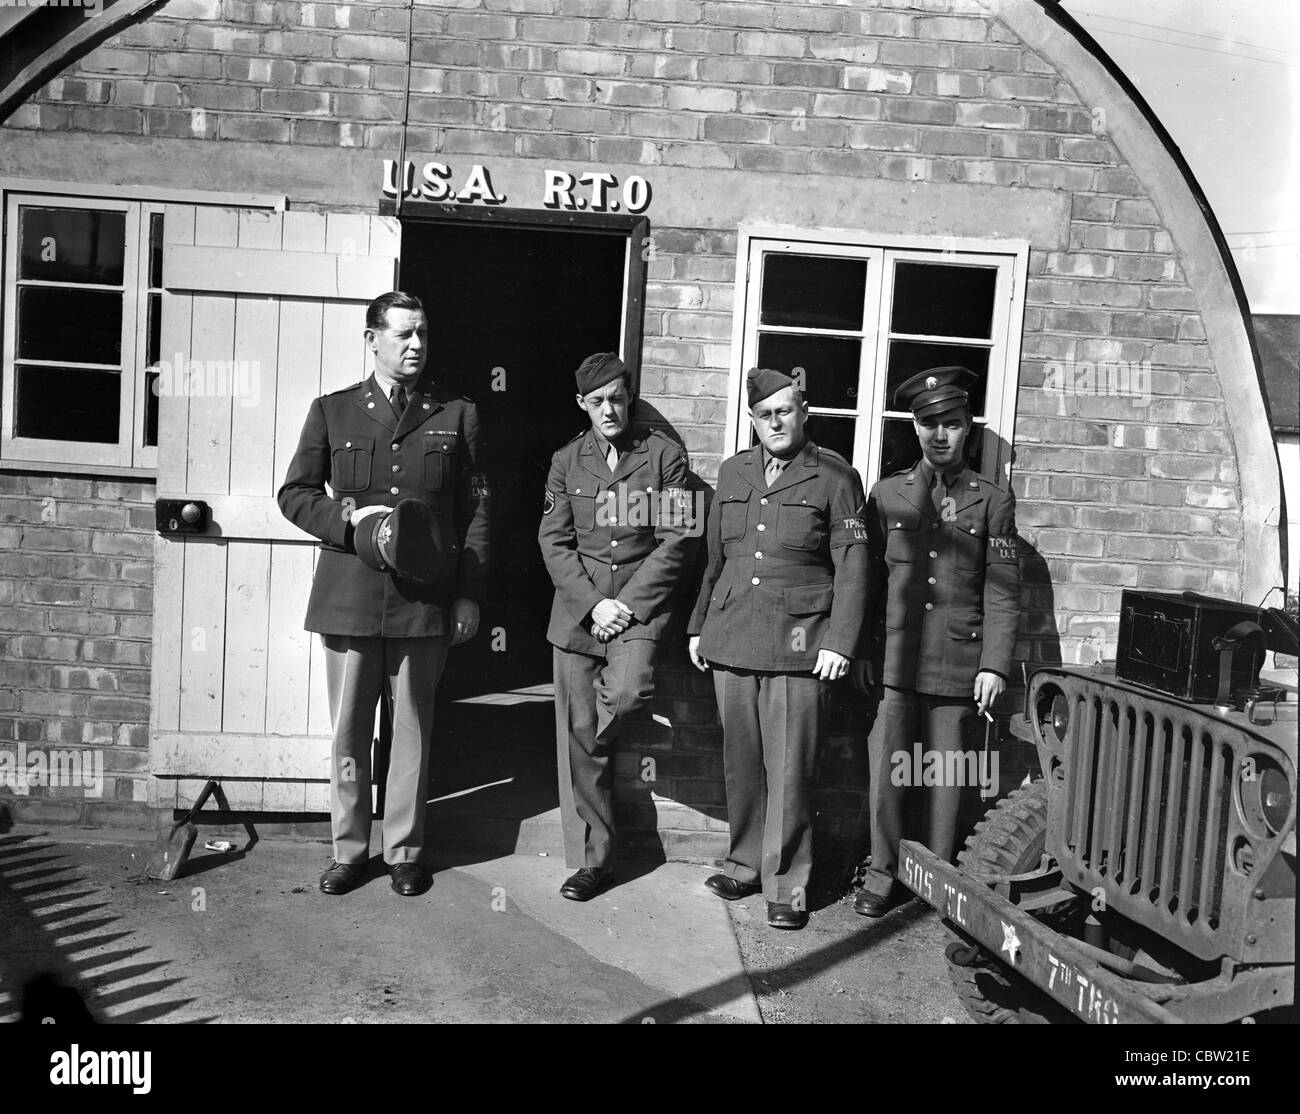 Fotos von Europa und England während des zweiten Weltkriegs. Dies sind die persönlichen Fotos eines US-Armee-Fotografen. Stockfoto